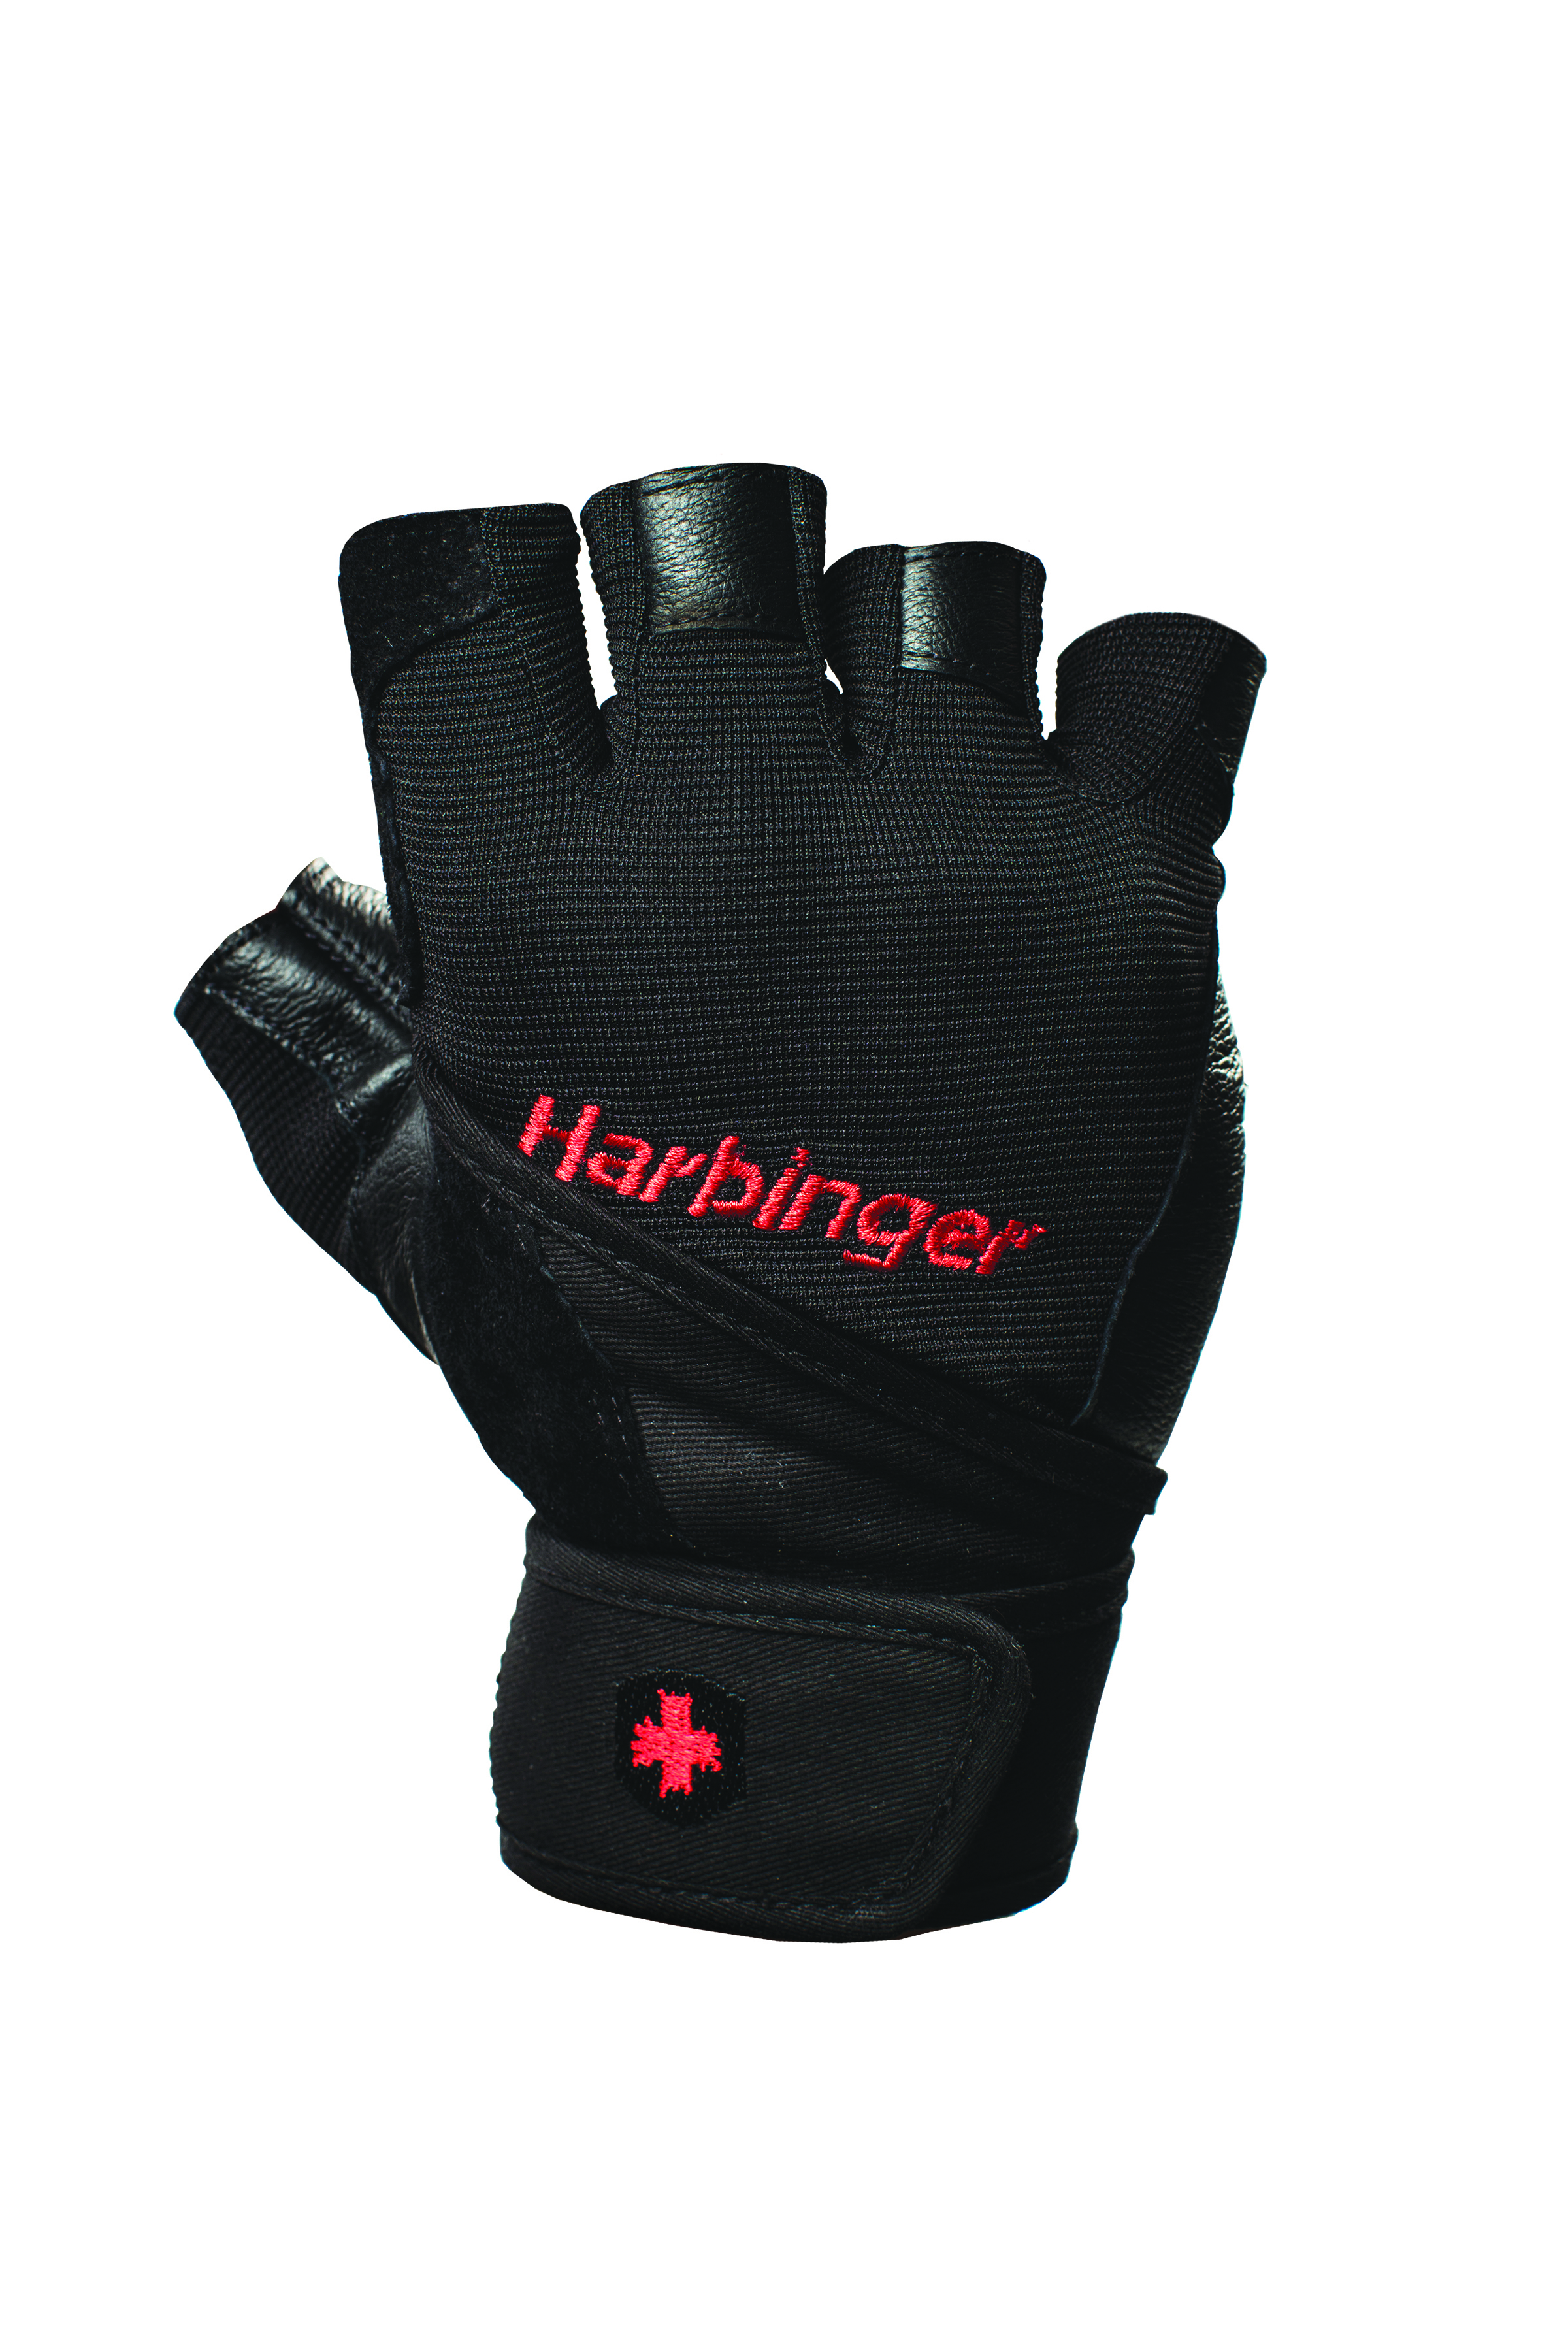 Harbinger Pro WristWrap Fitnesshandschoenen - S